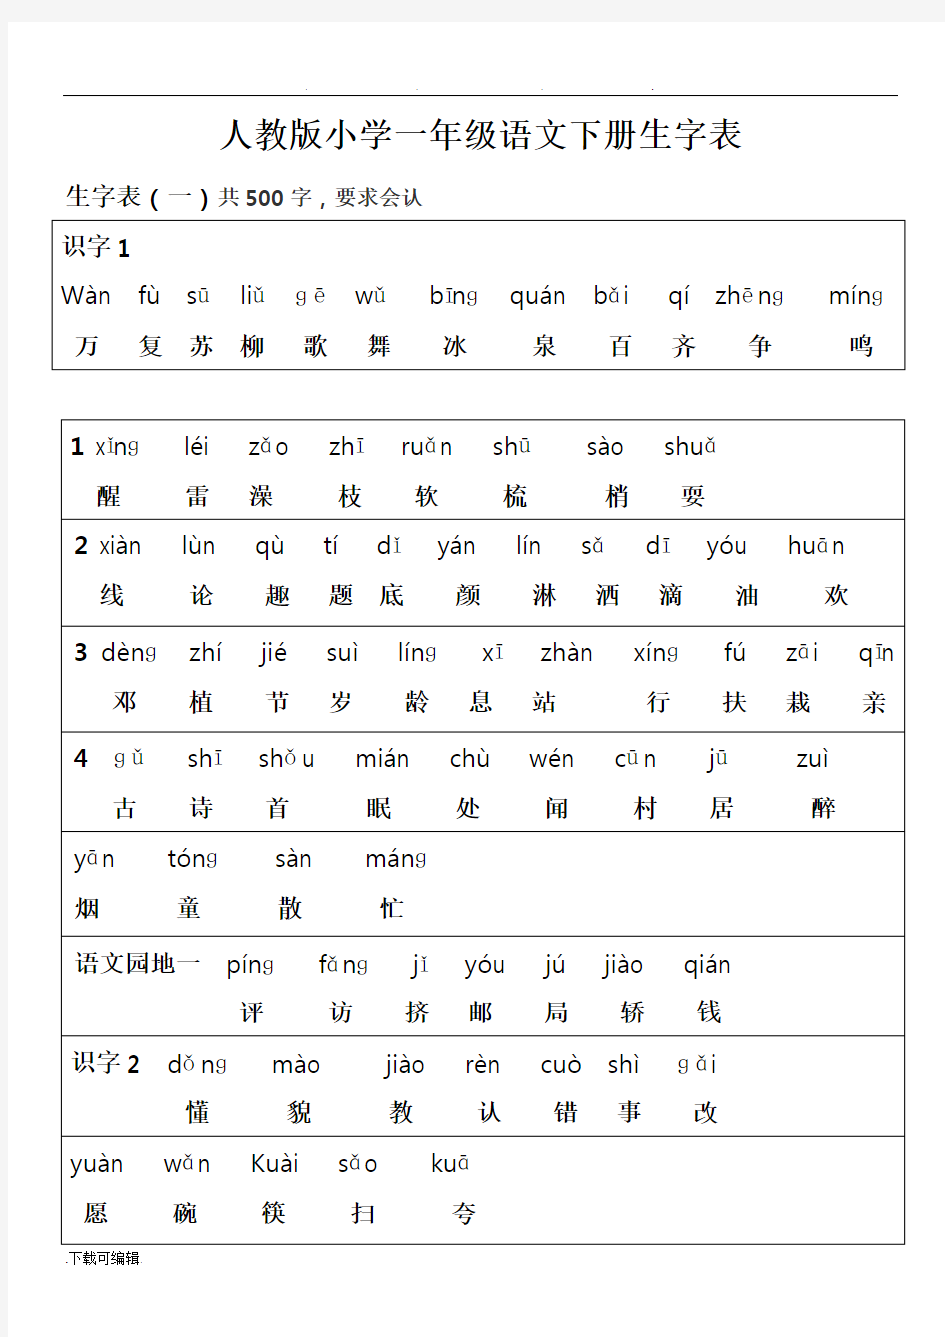 人教版一年级语文(下册)(所有生字表带拼音和汉字)